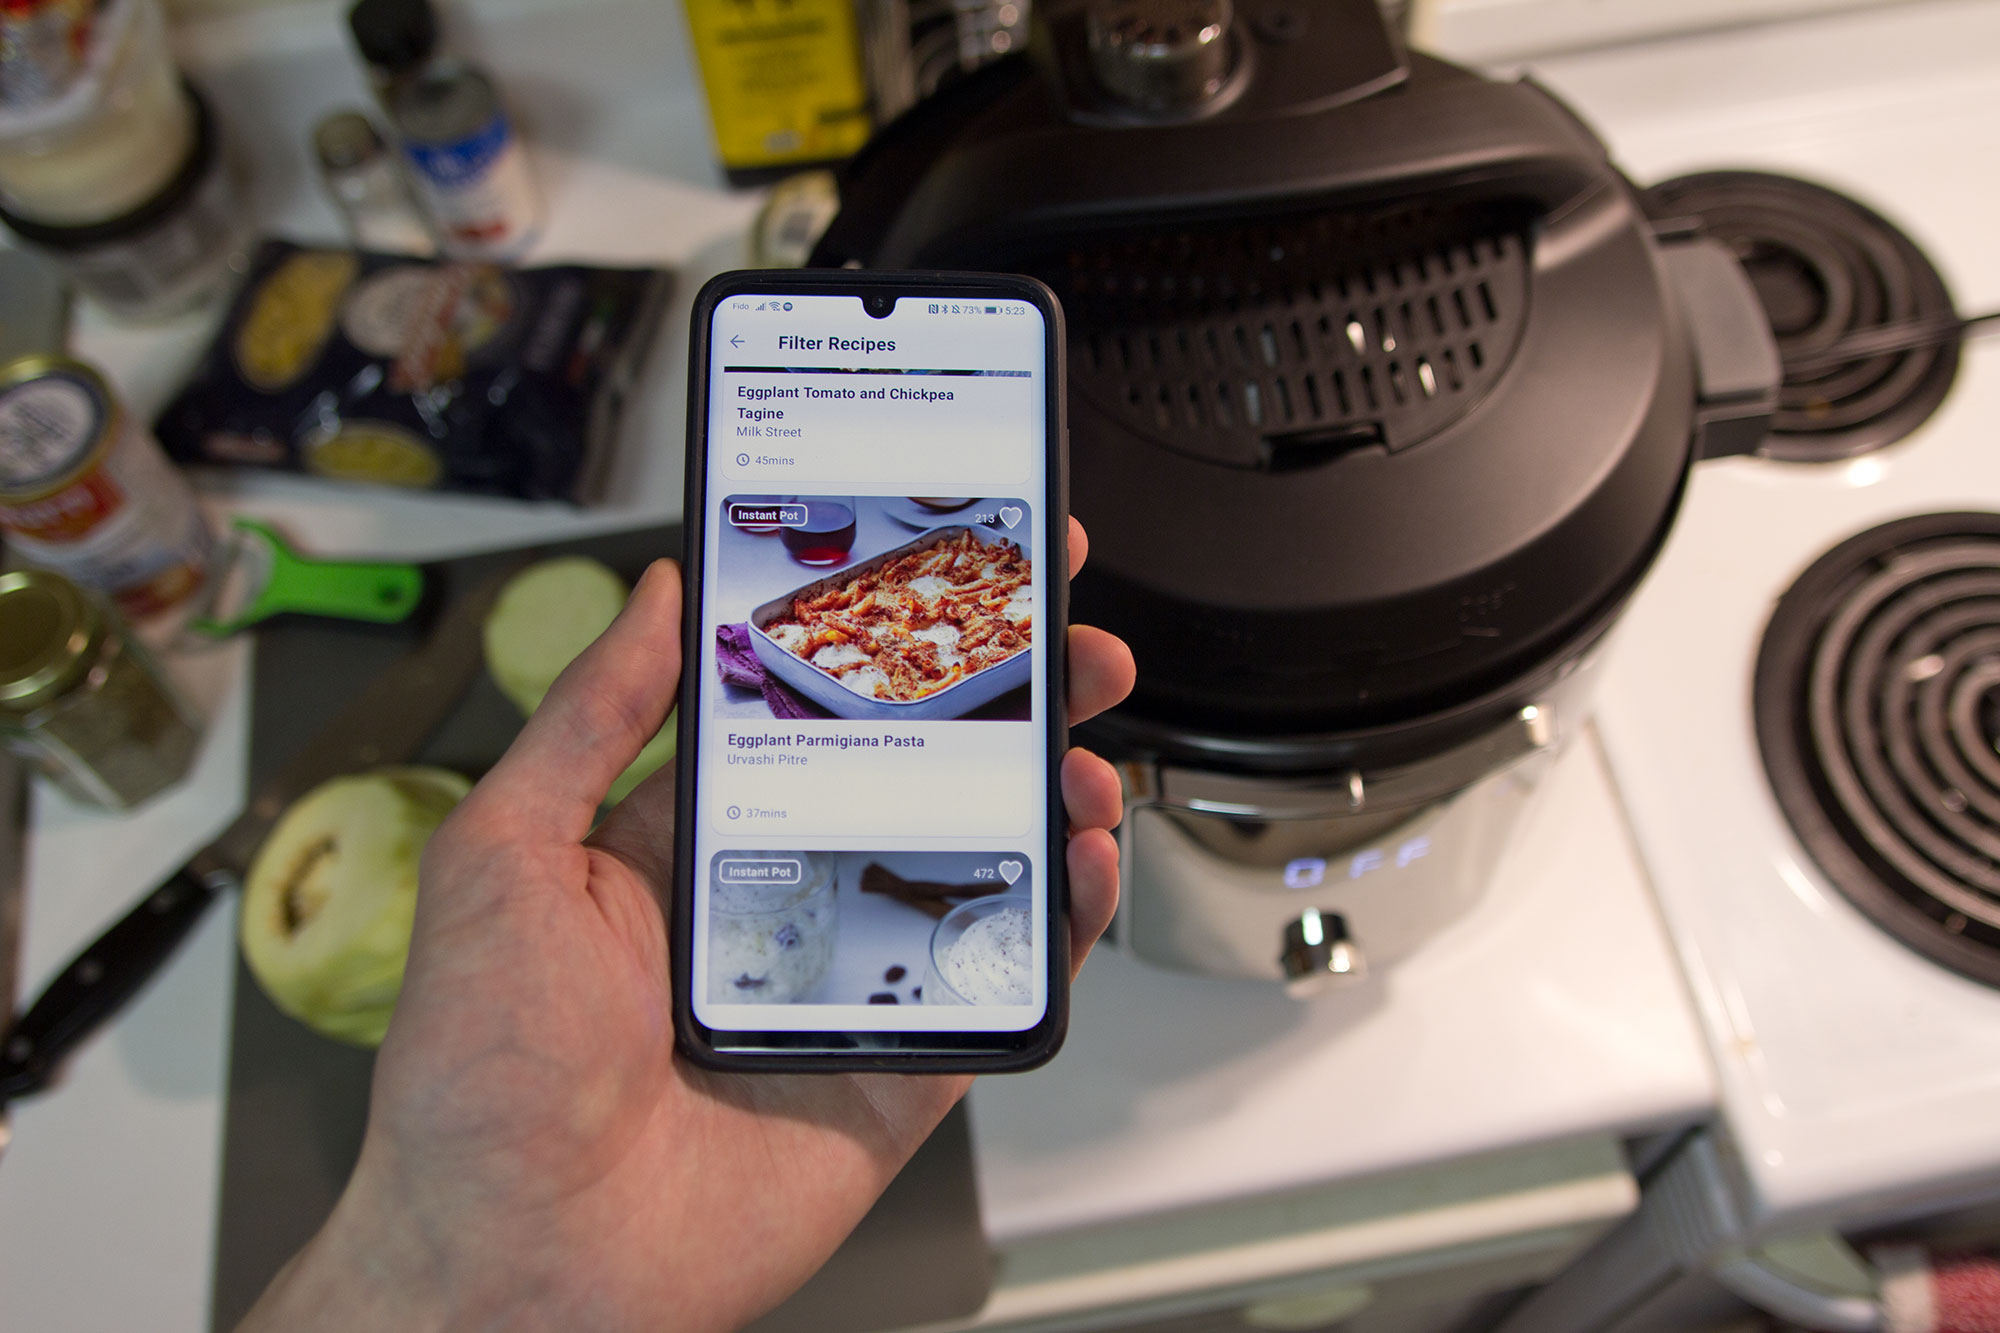 Instant Pot Pro Plus Smart Multi Cooker - Rave & Review